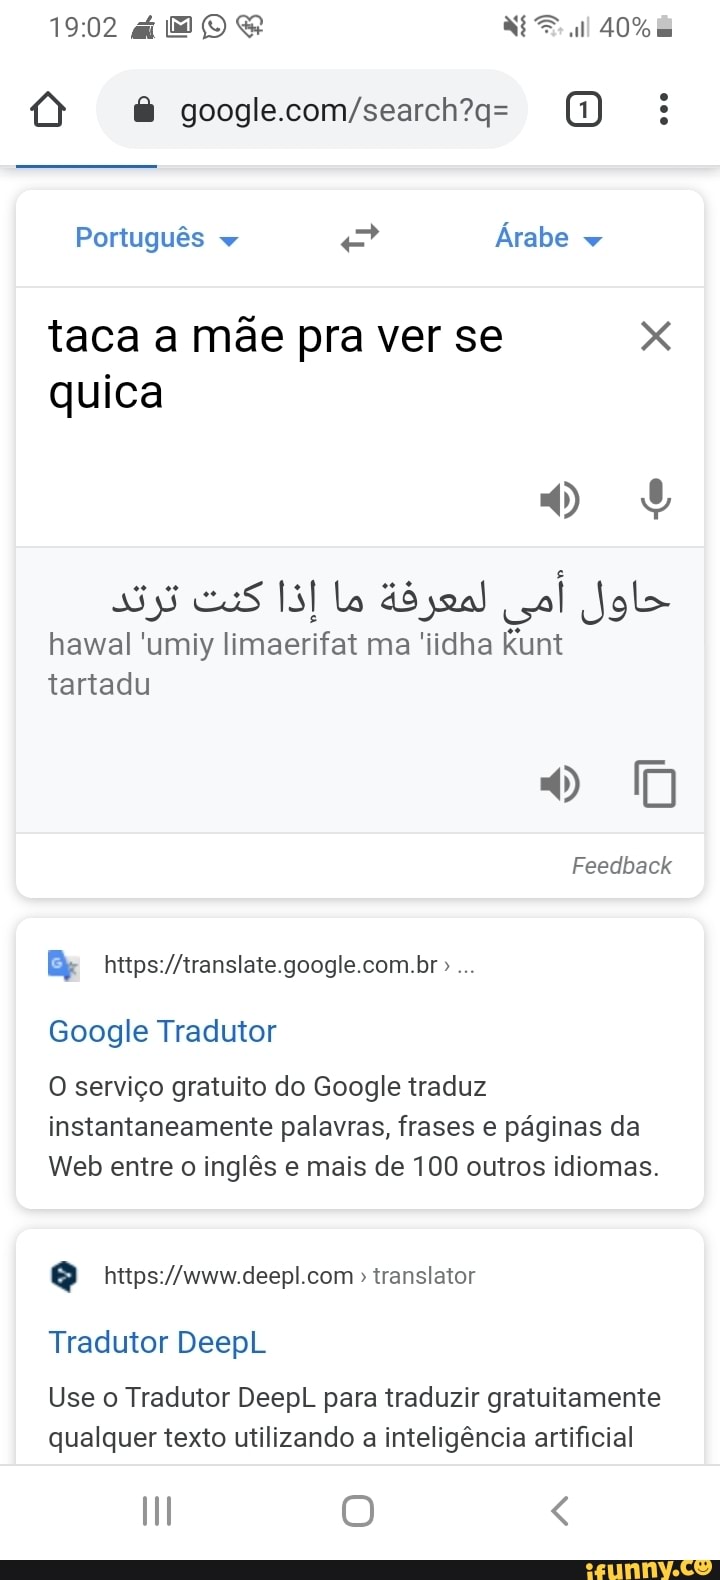 Então ta né, quem sou eu pra questionar o google tradutor : r/Felps